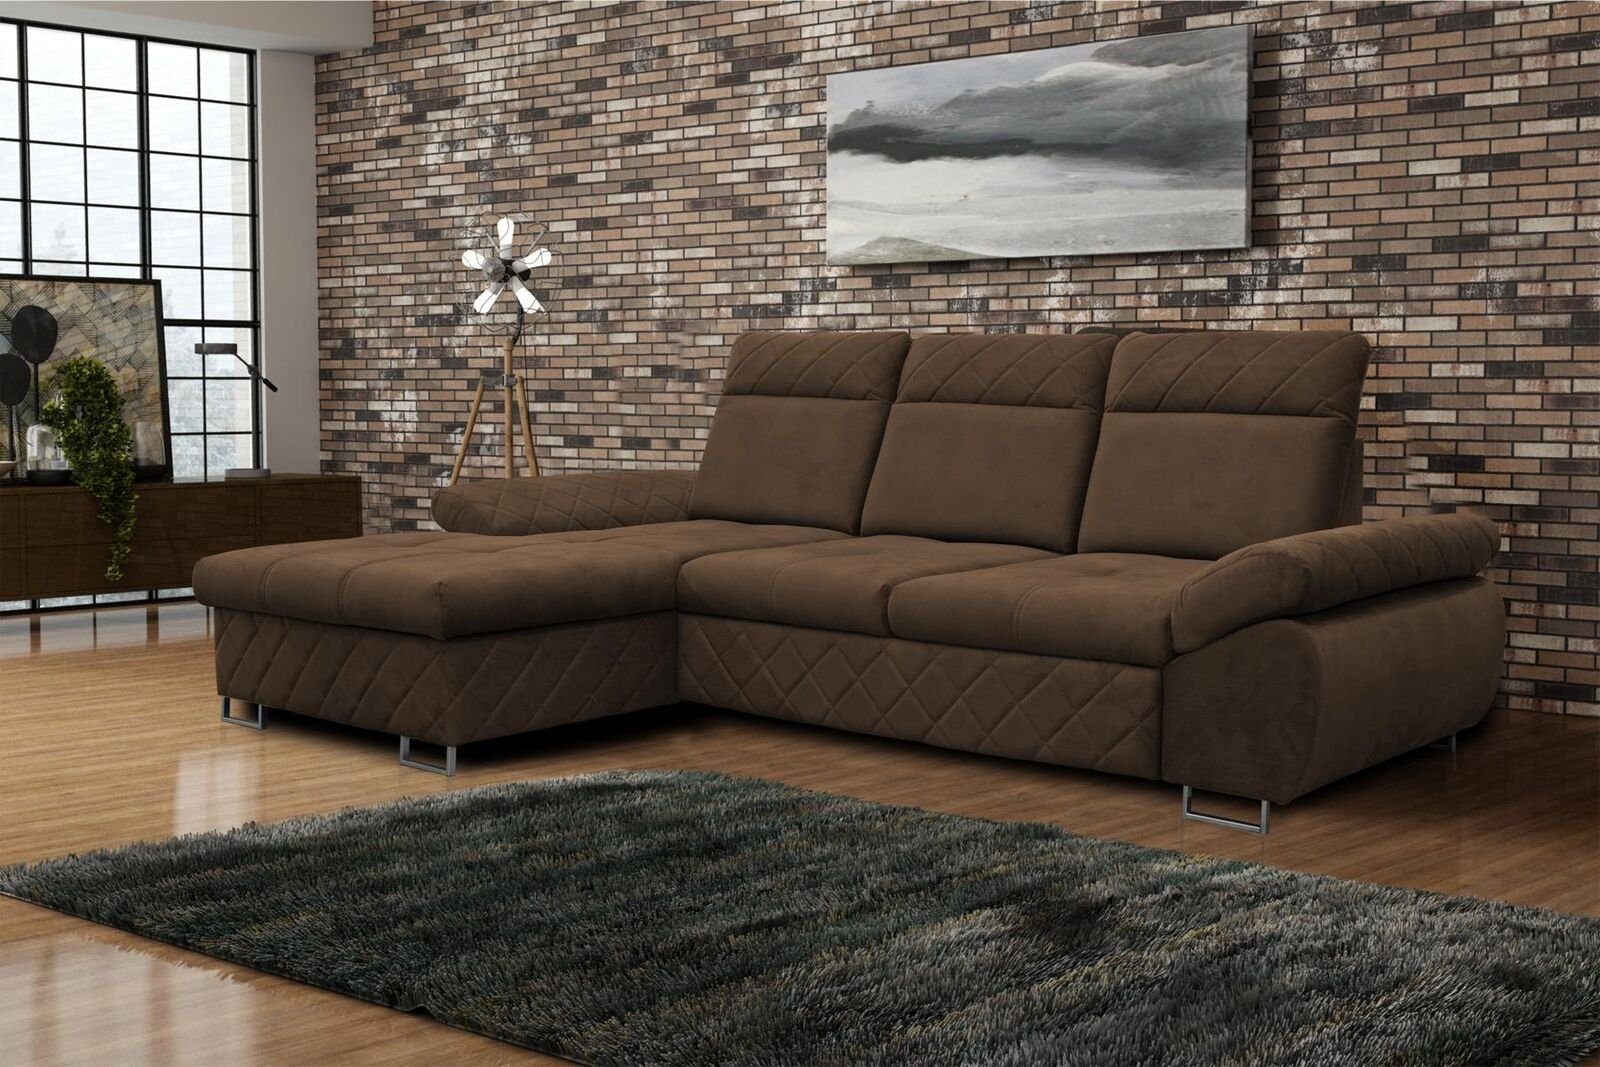 JVmoebel Ecksofa Wohnzimmer Textil L-Form Sofas Braune Ecksofa Couch Polstermöbel, Mit Bettfunktion | Ecksofas